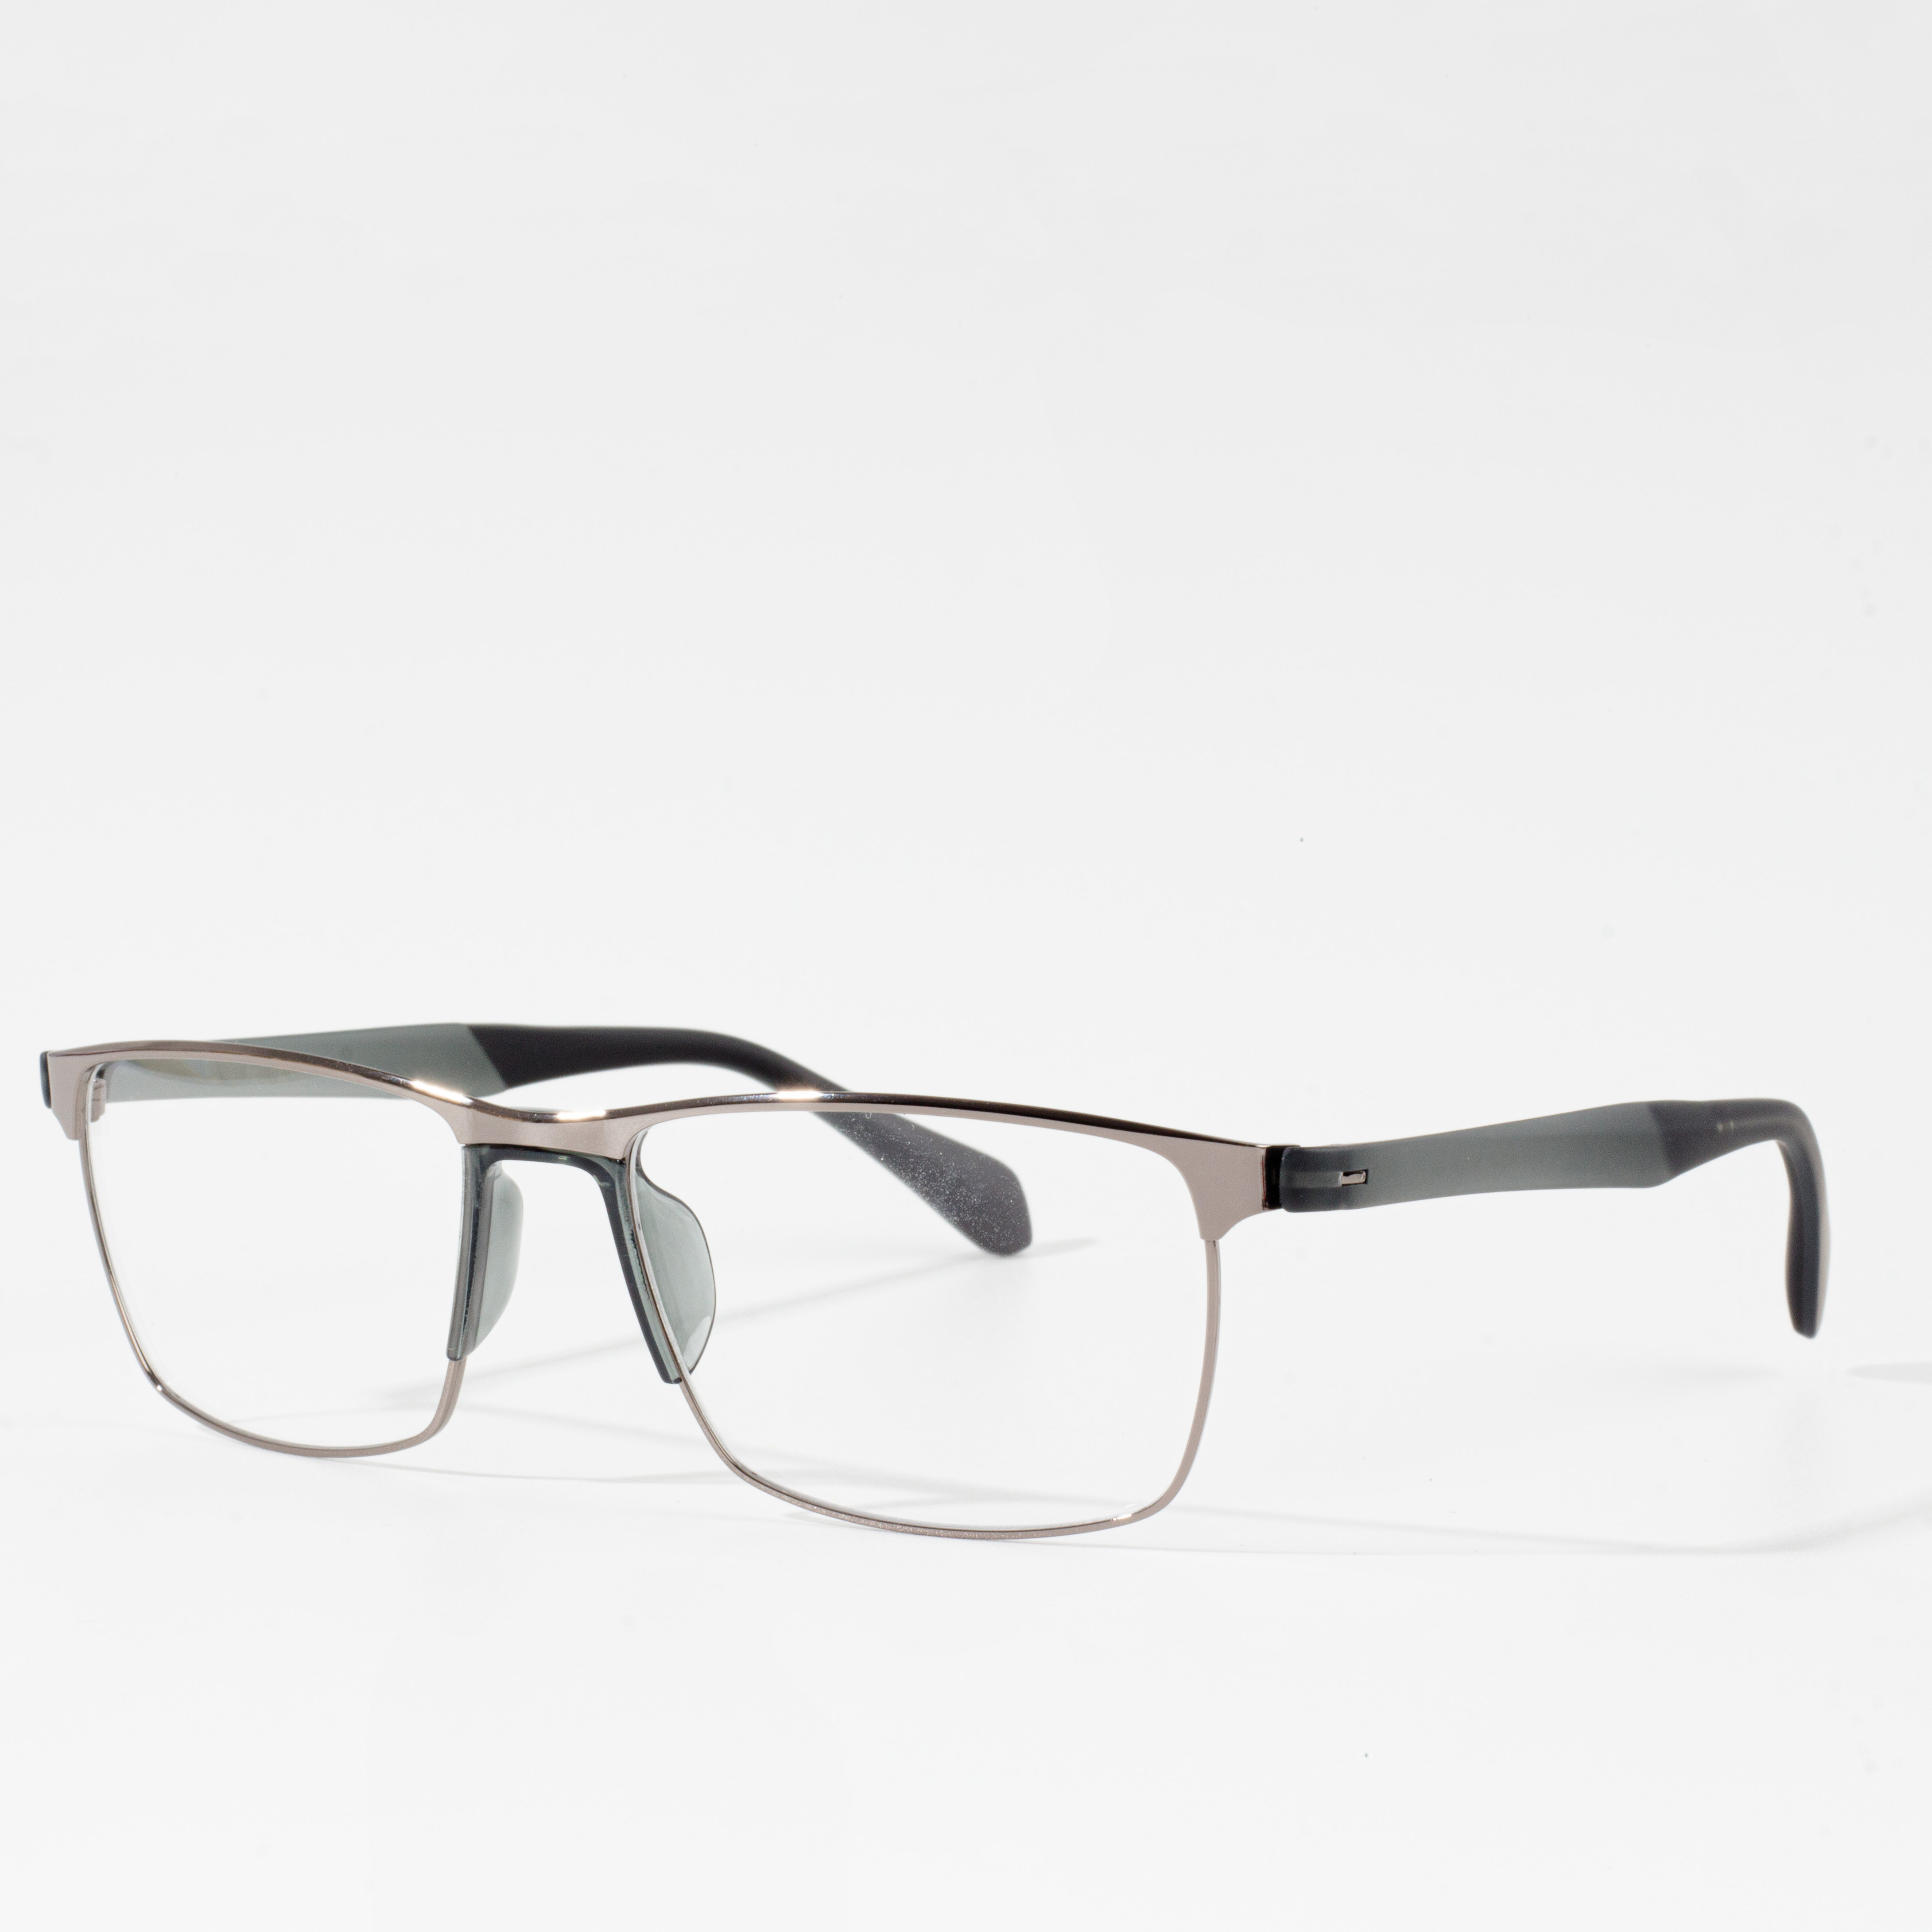 optyske bril tr90 frame